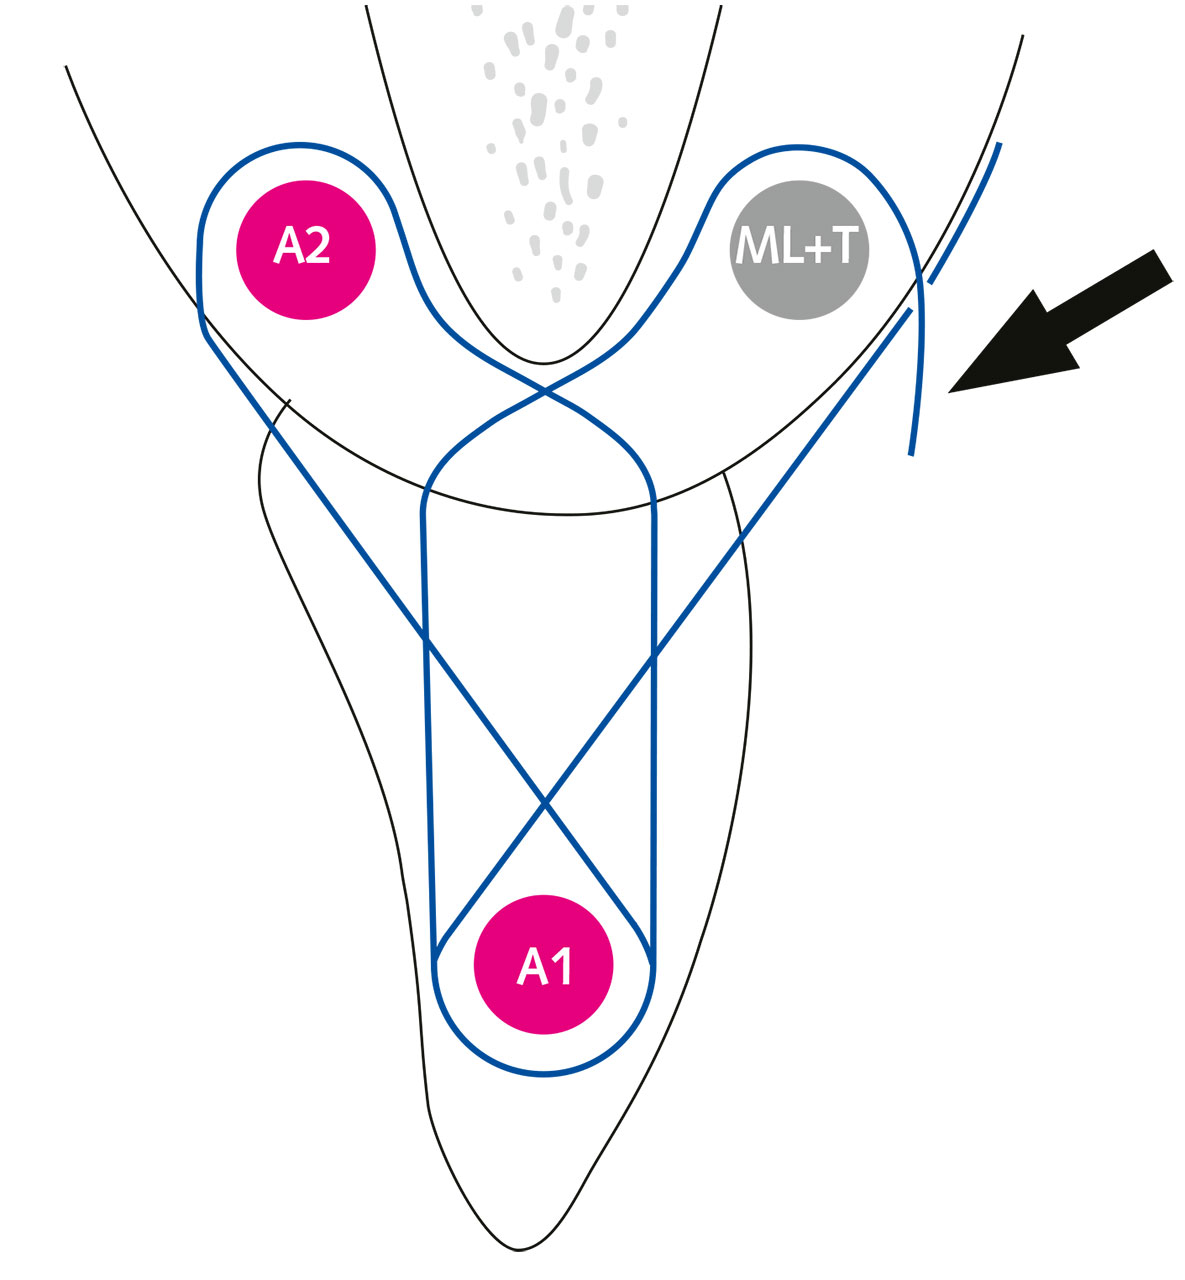 Abb. 20 Schematische Darstellung der Lappen- und Transplantatstabilisierung (Pfeil) durch eine vertikale „double crossed suture“. Das interdental angebrachte Composite sowie die mastikatorische Gaumenmukosa  dienen als Anker (ML + T = mobiler Lappen und Transplantat, A1 = Anker 1, A2 = Anker 2).